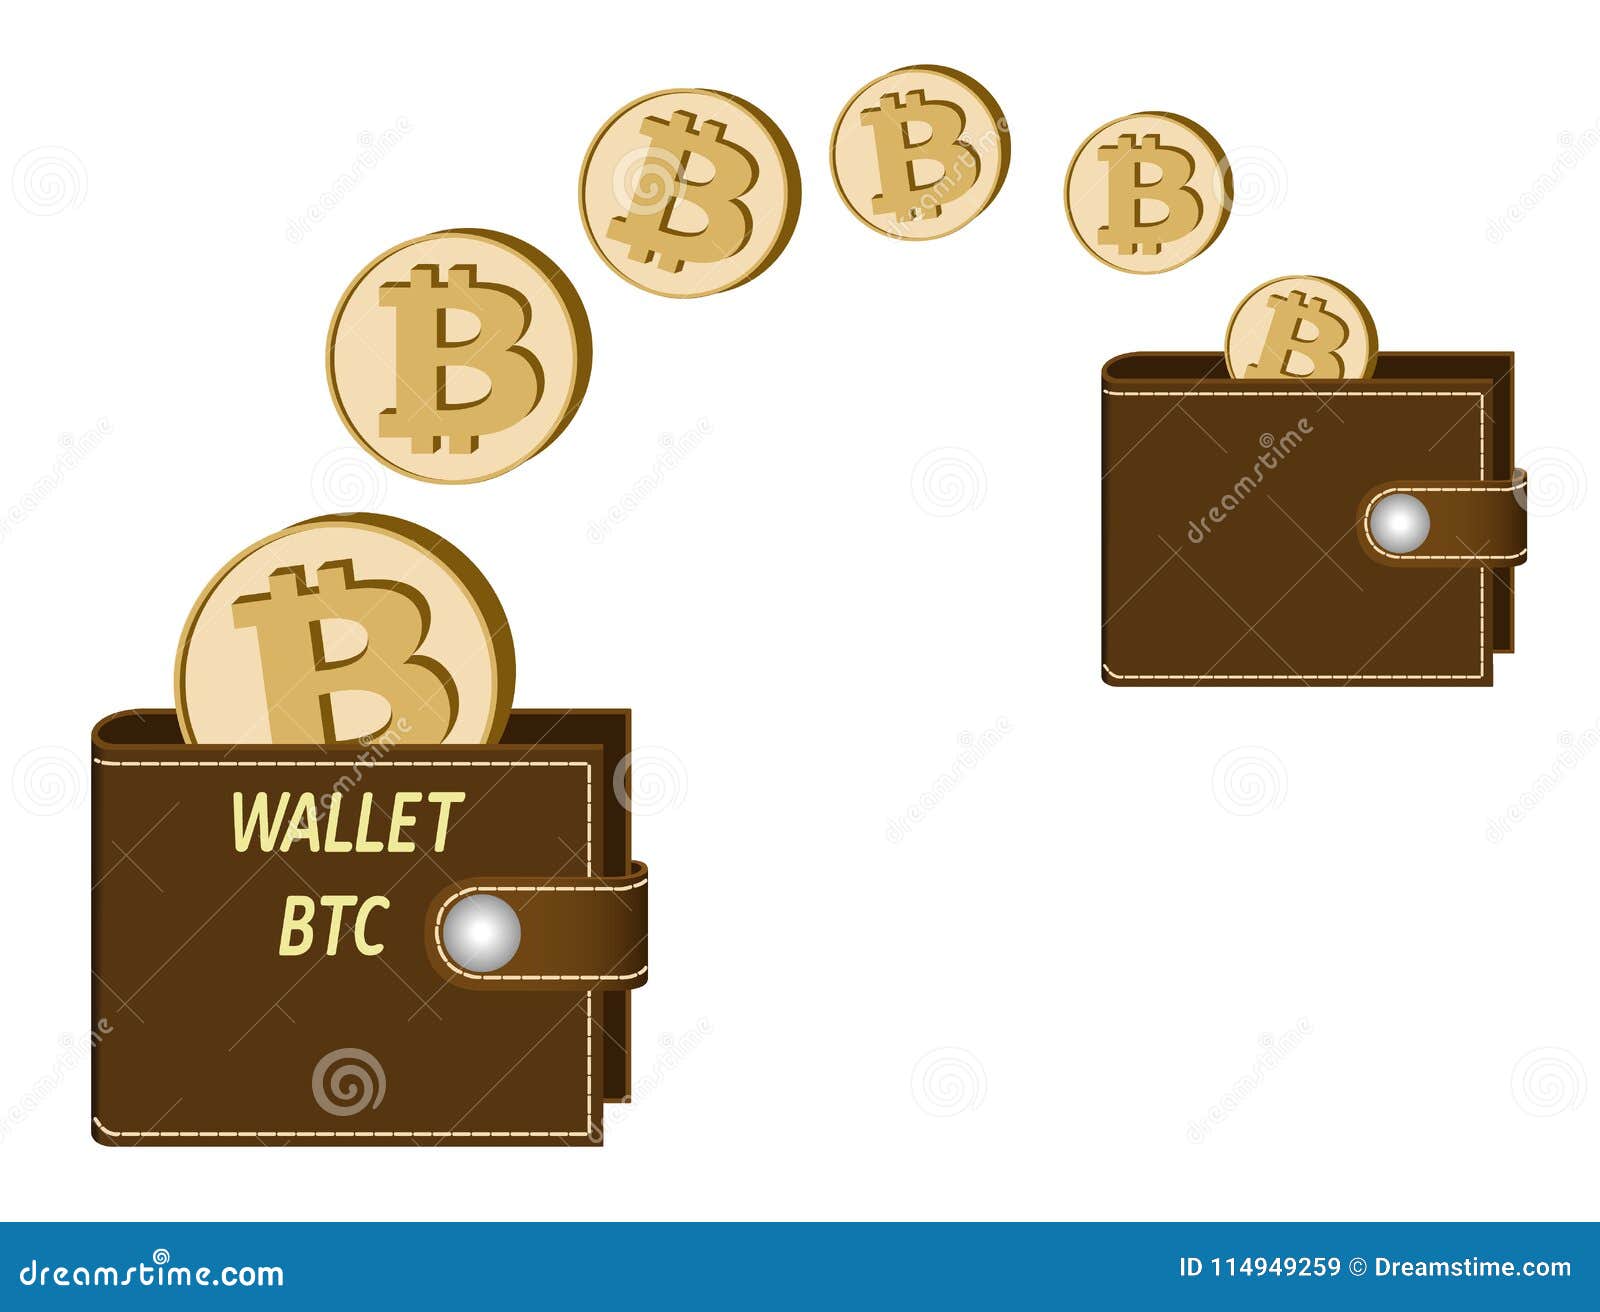 Transfer wallet bitcoin регистрация в биткоин официальный сайт